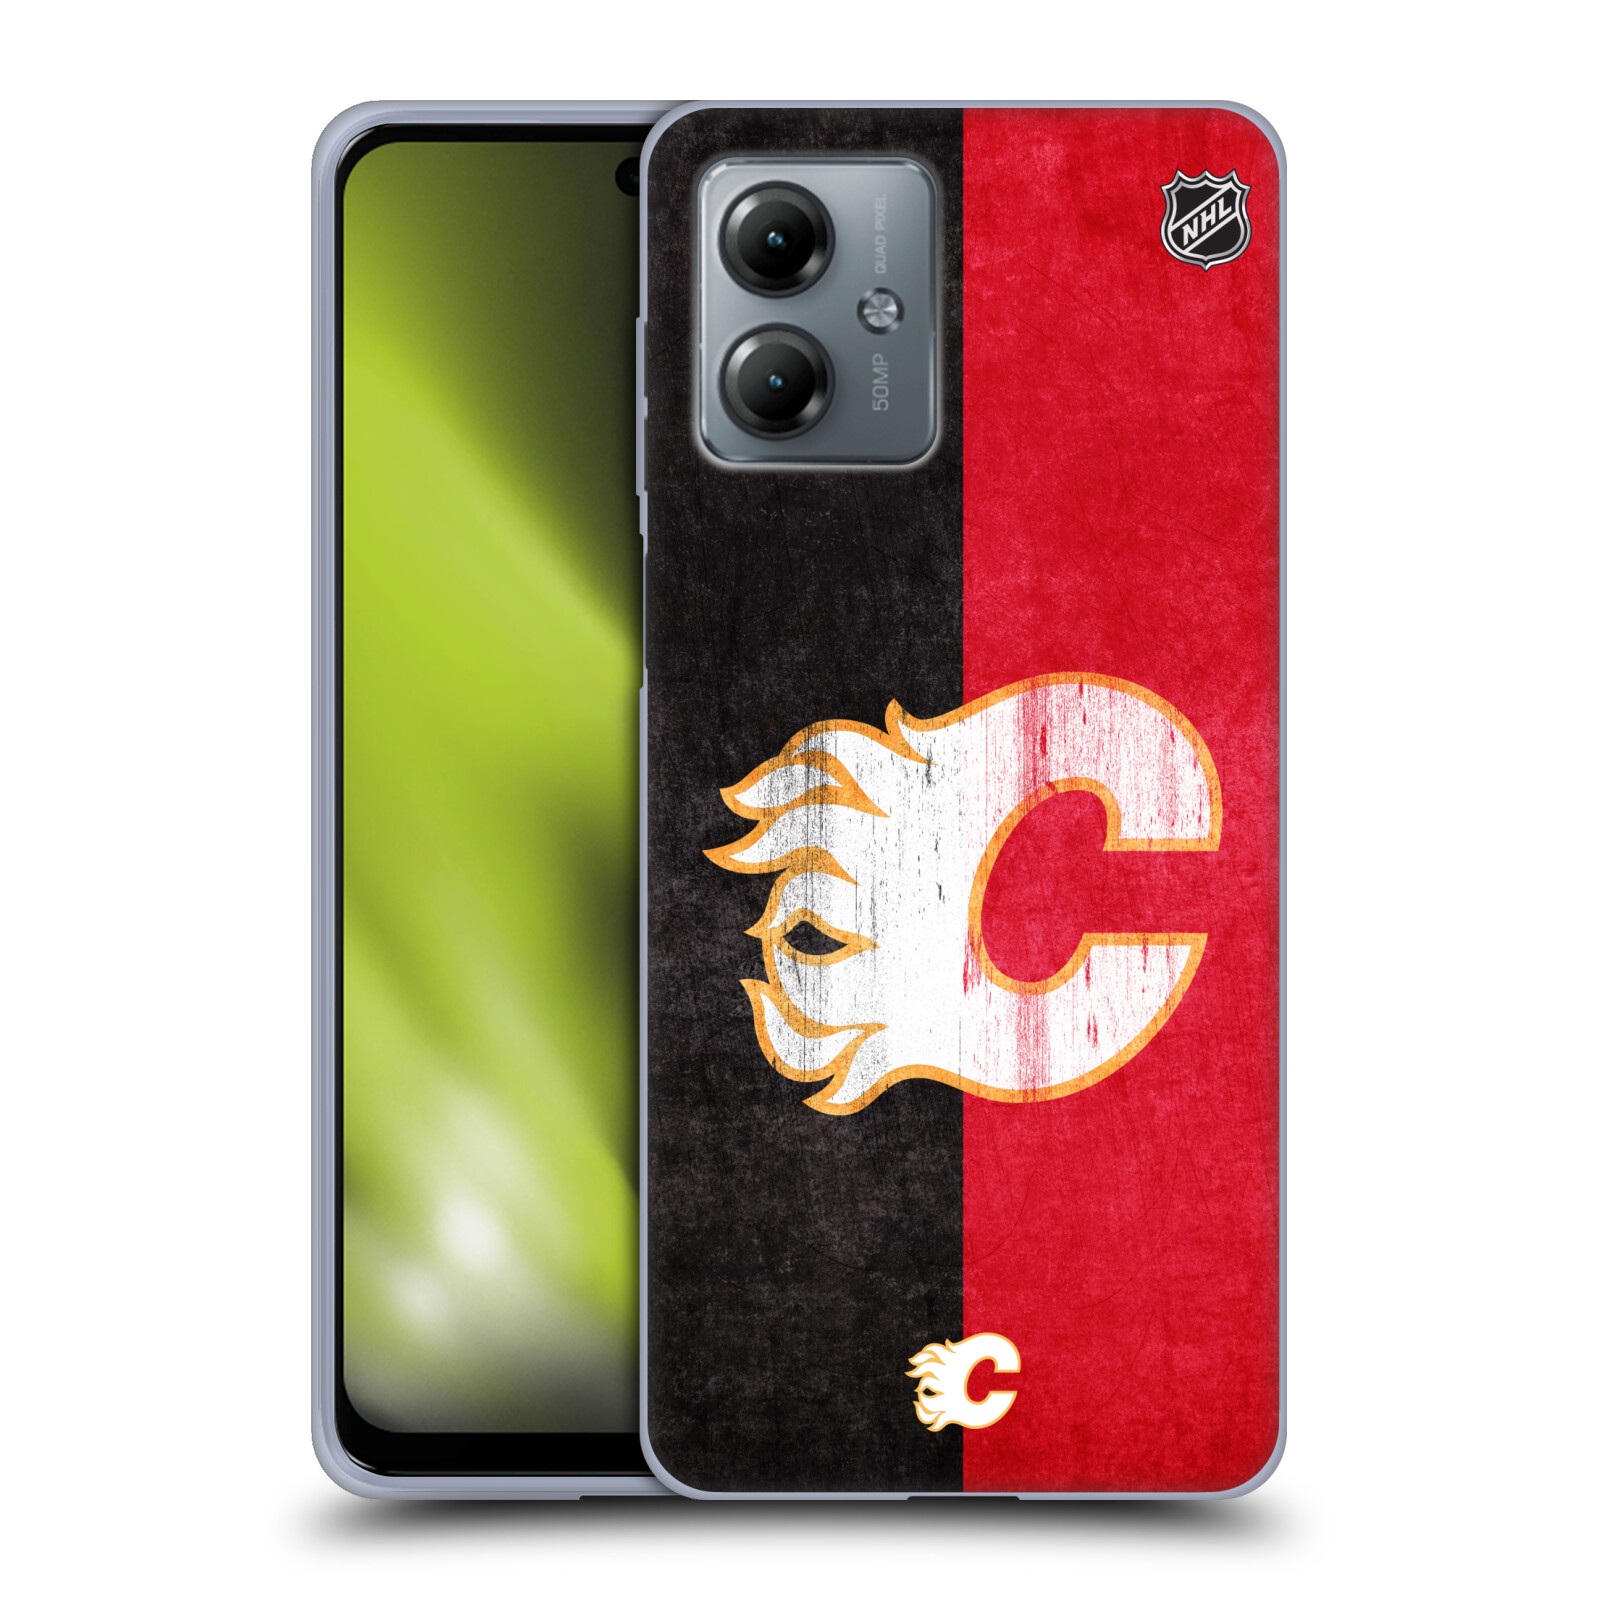 Silikonové pouzdro na mobil Motorola Moto G14 - NHL - Půlené logo Calgary Flames (Silikonový kryt, obal, pouzdro na mobilní telefon Motorola Moto G14 s licencovaným motivem NHL - Půlené logo Calgary Flames)